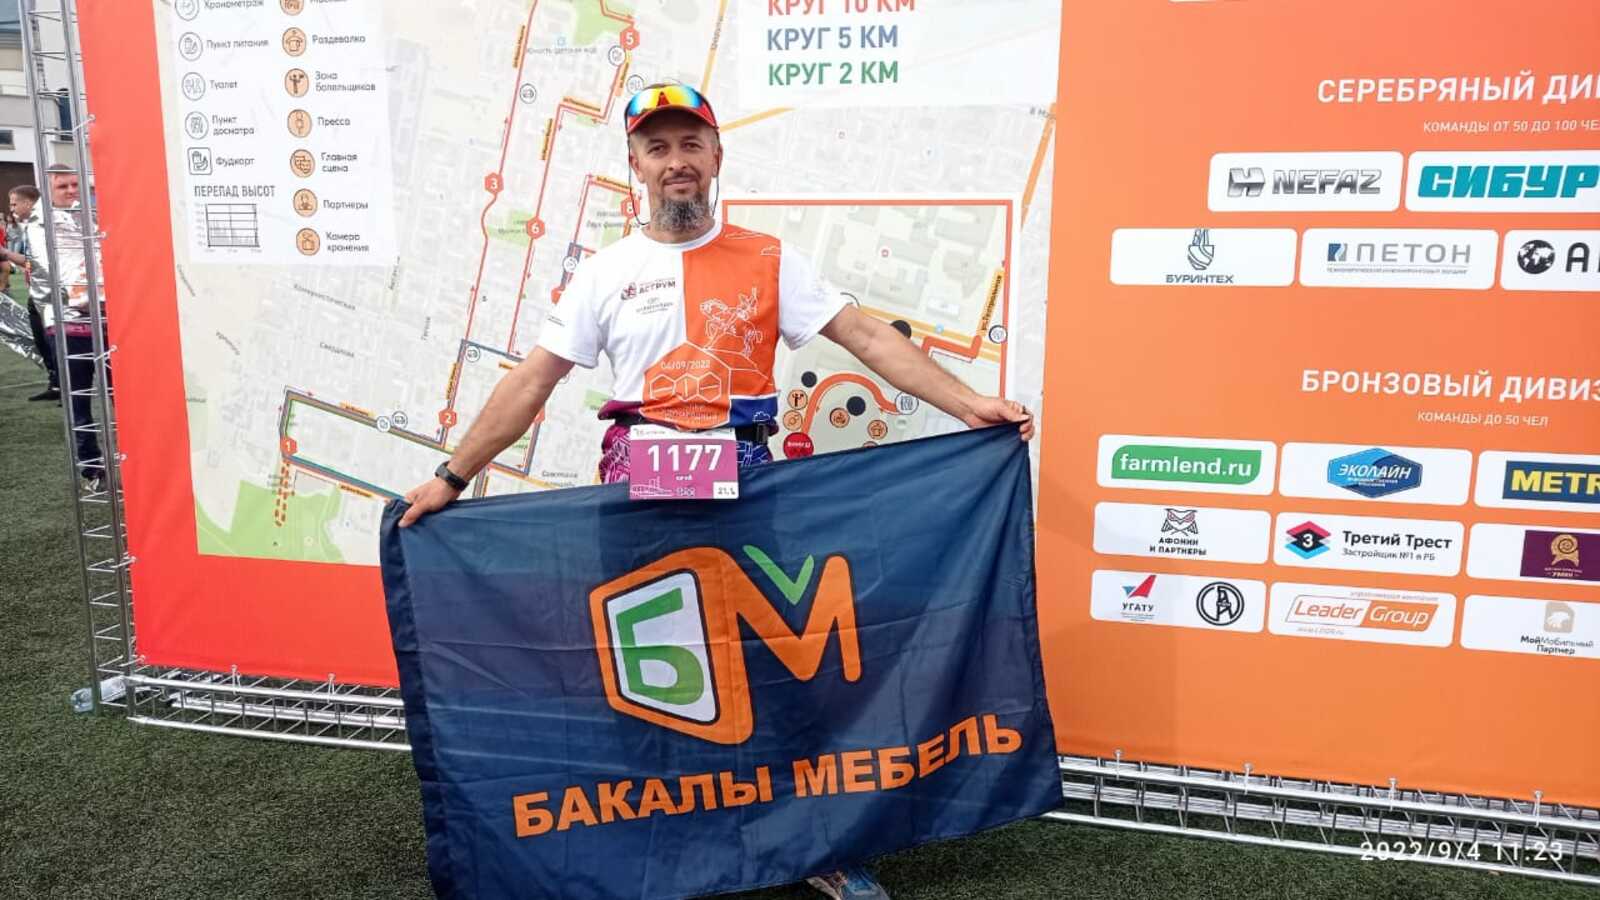 Самоцель Юрия Митрофанова - пробежать 10 марафонов в 2022 году